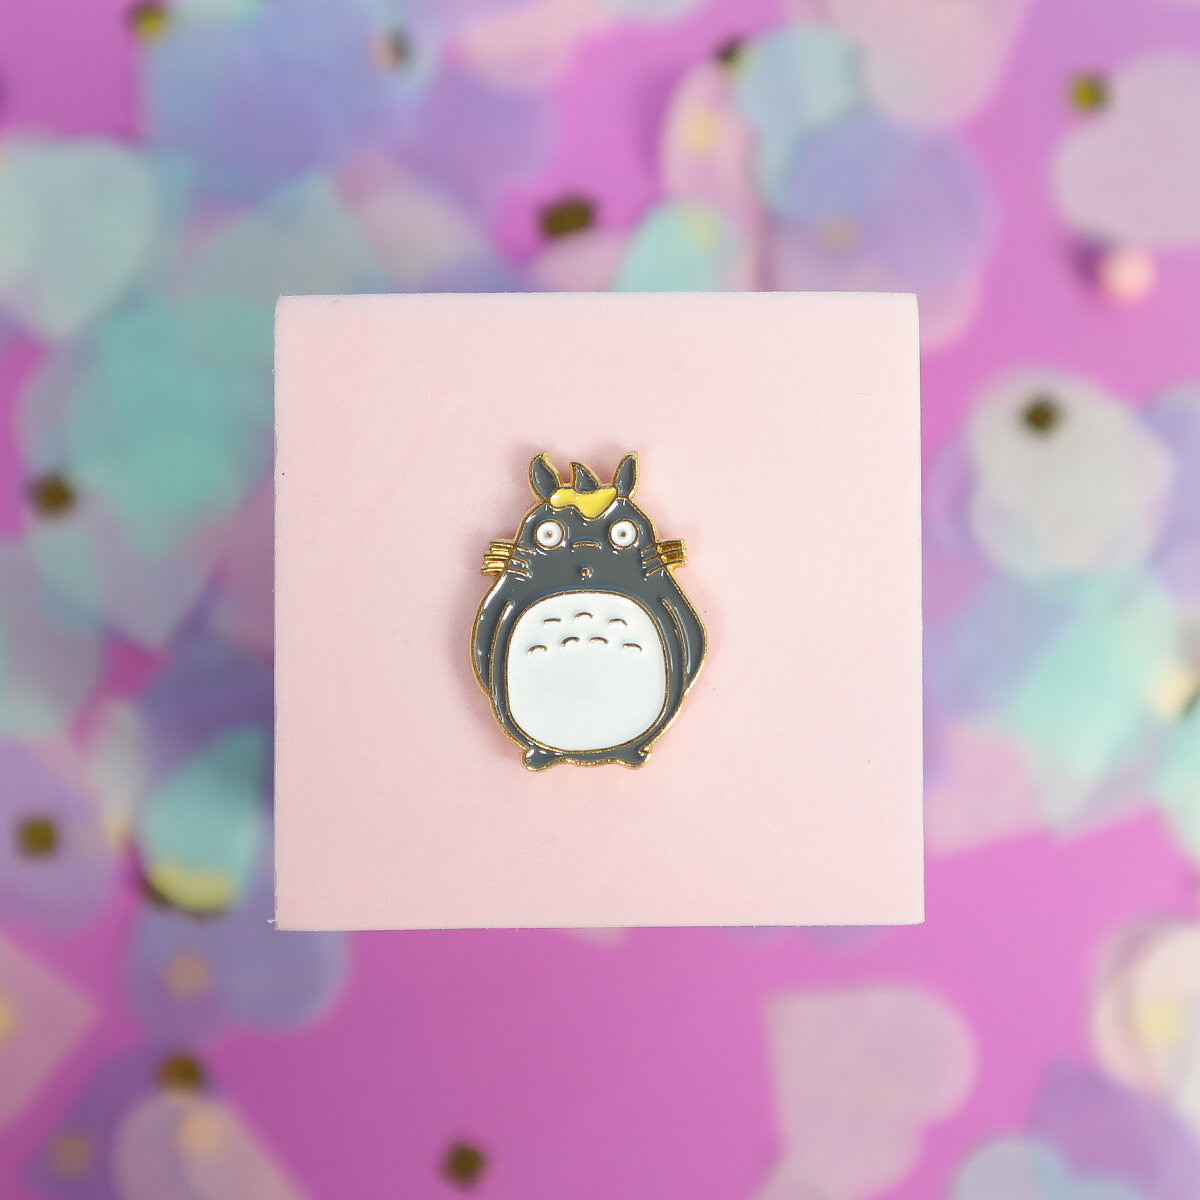 Pin - Totoro